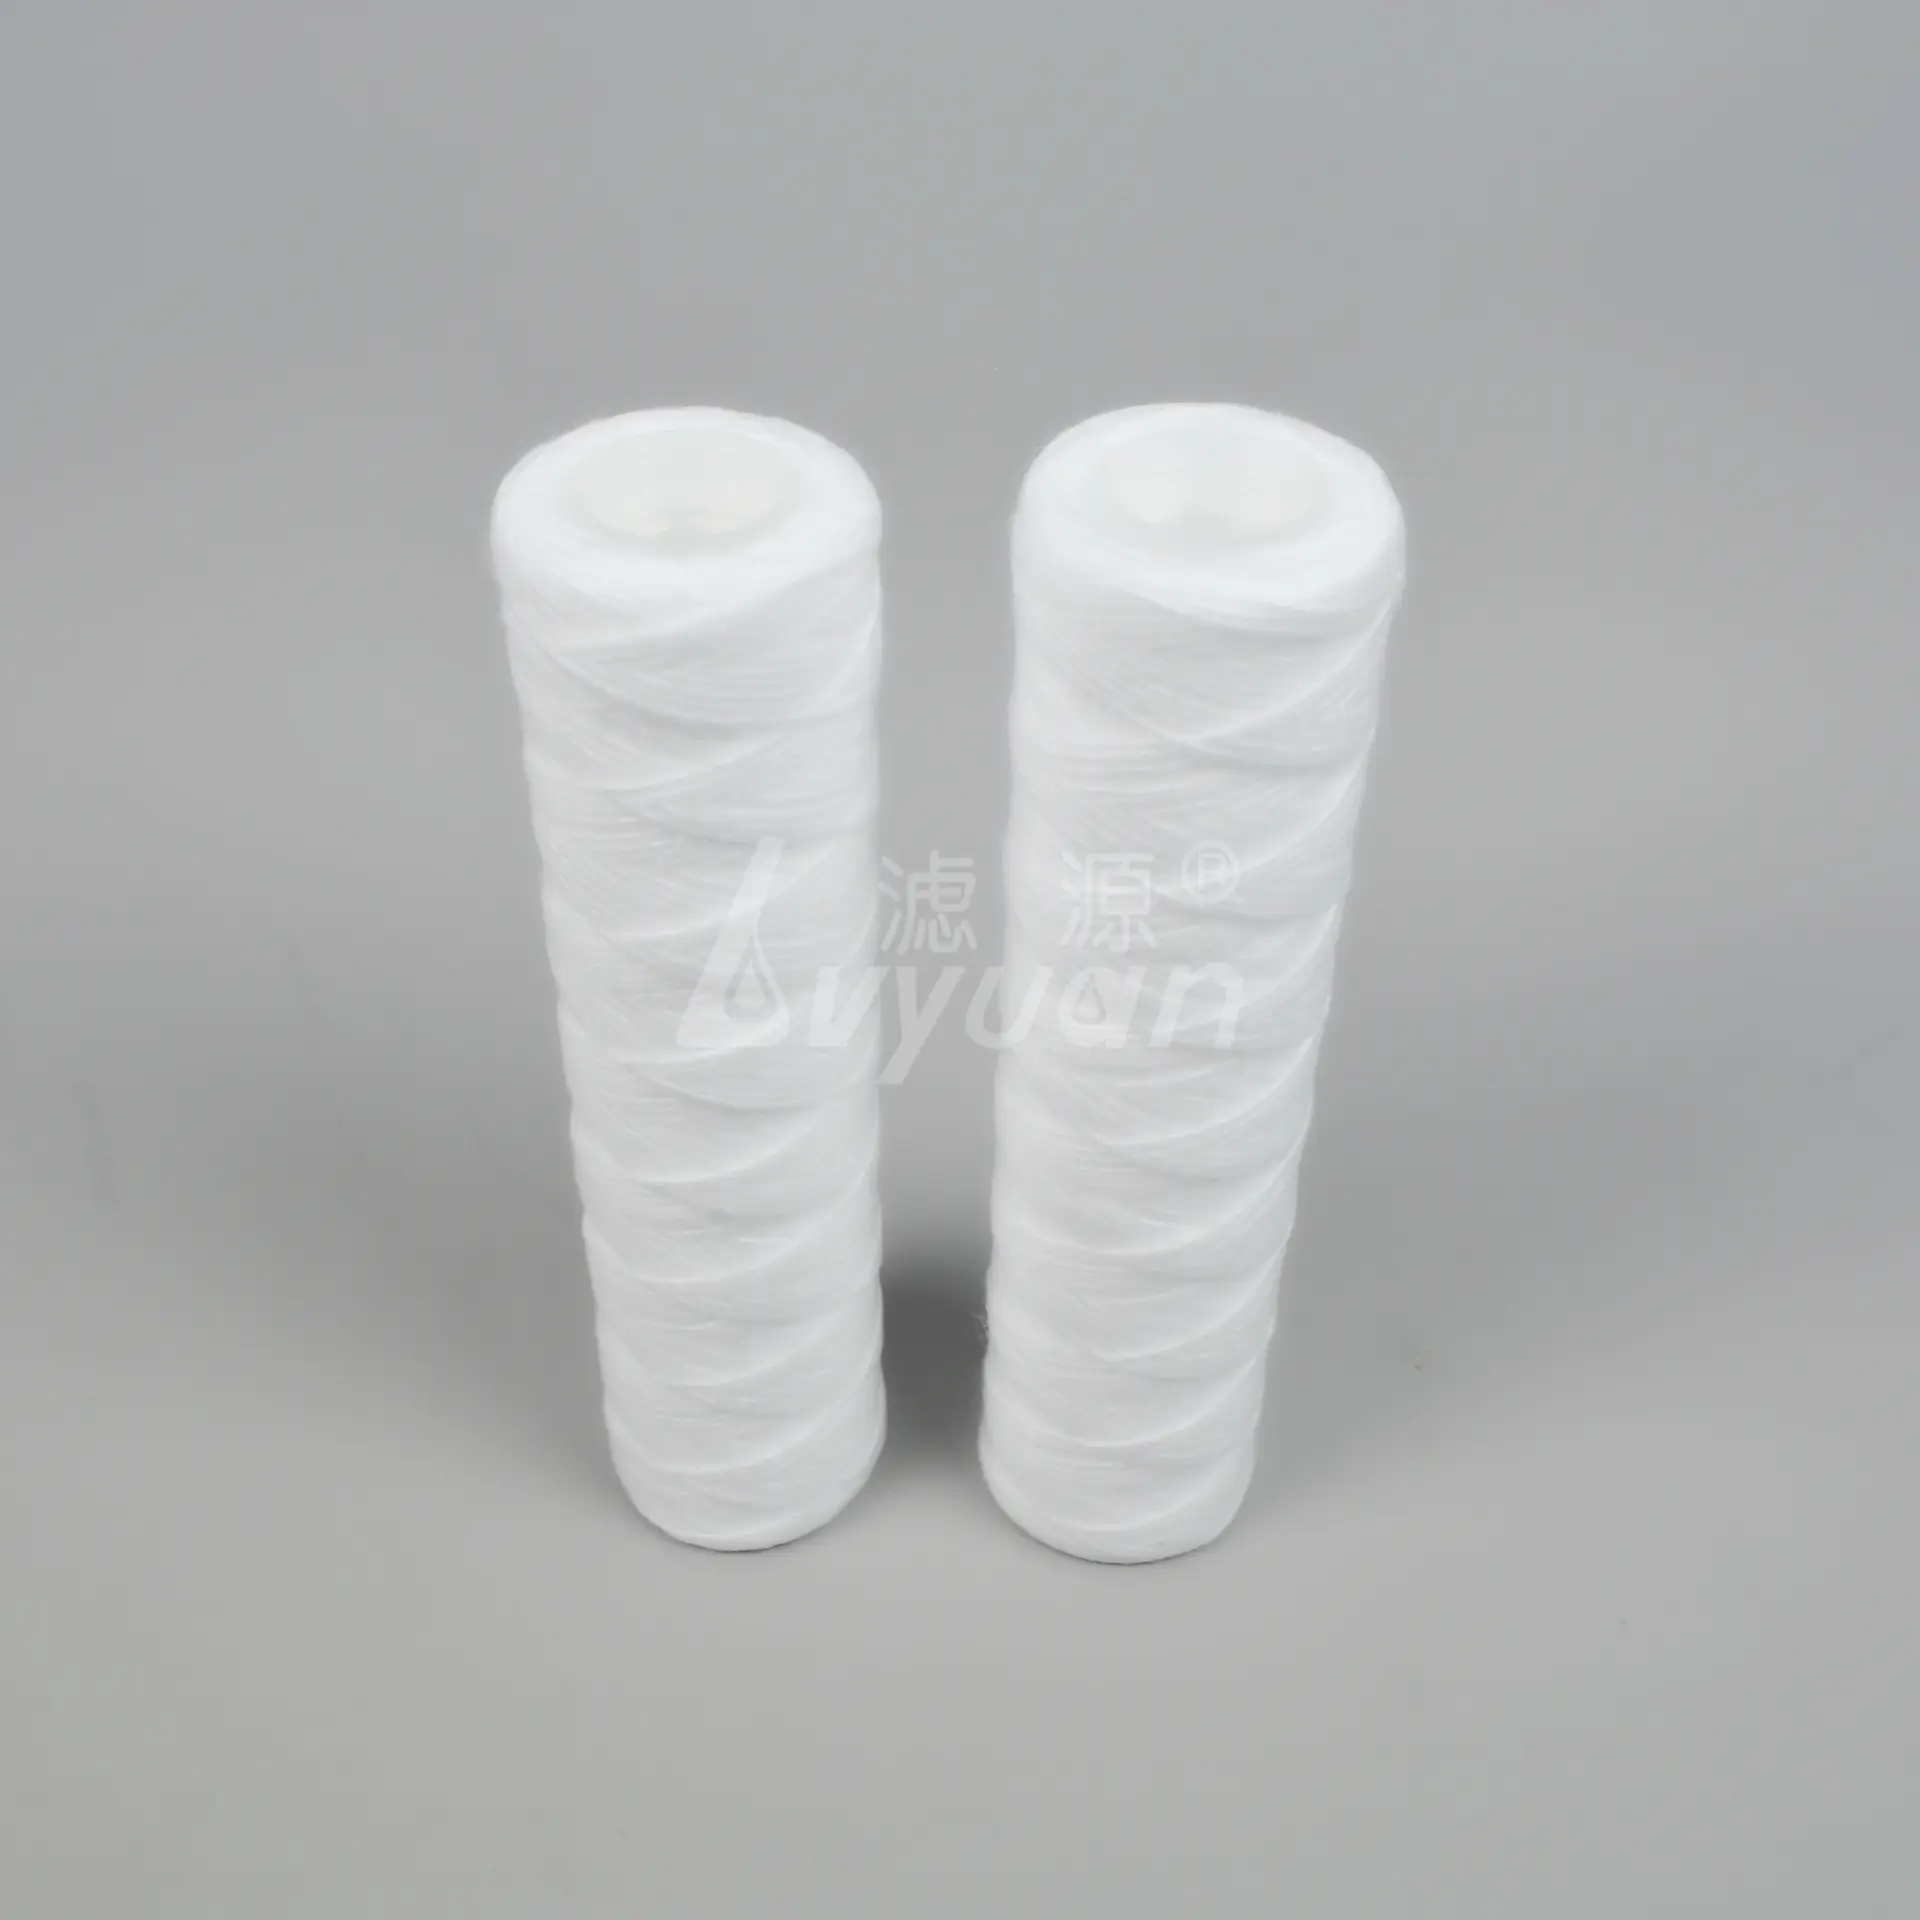 1box/50pcs 1 3 5 10 micron 10 inch spun polypropylene filter cartridge/pp string wound yarn filter cartridge for water filter